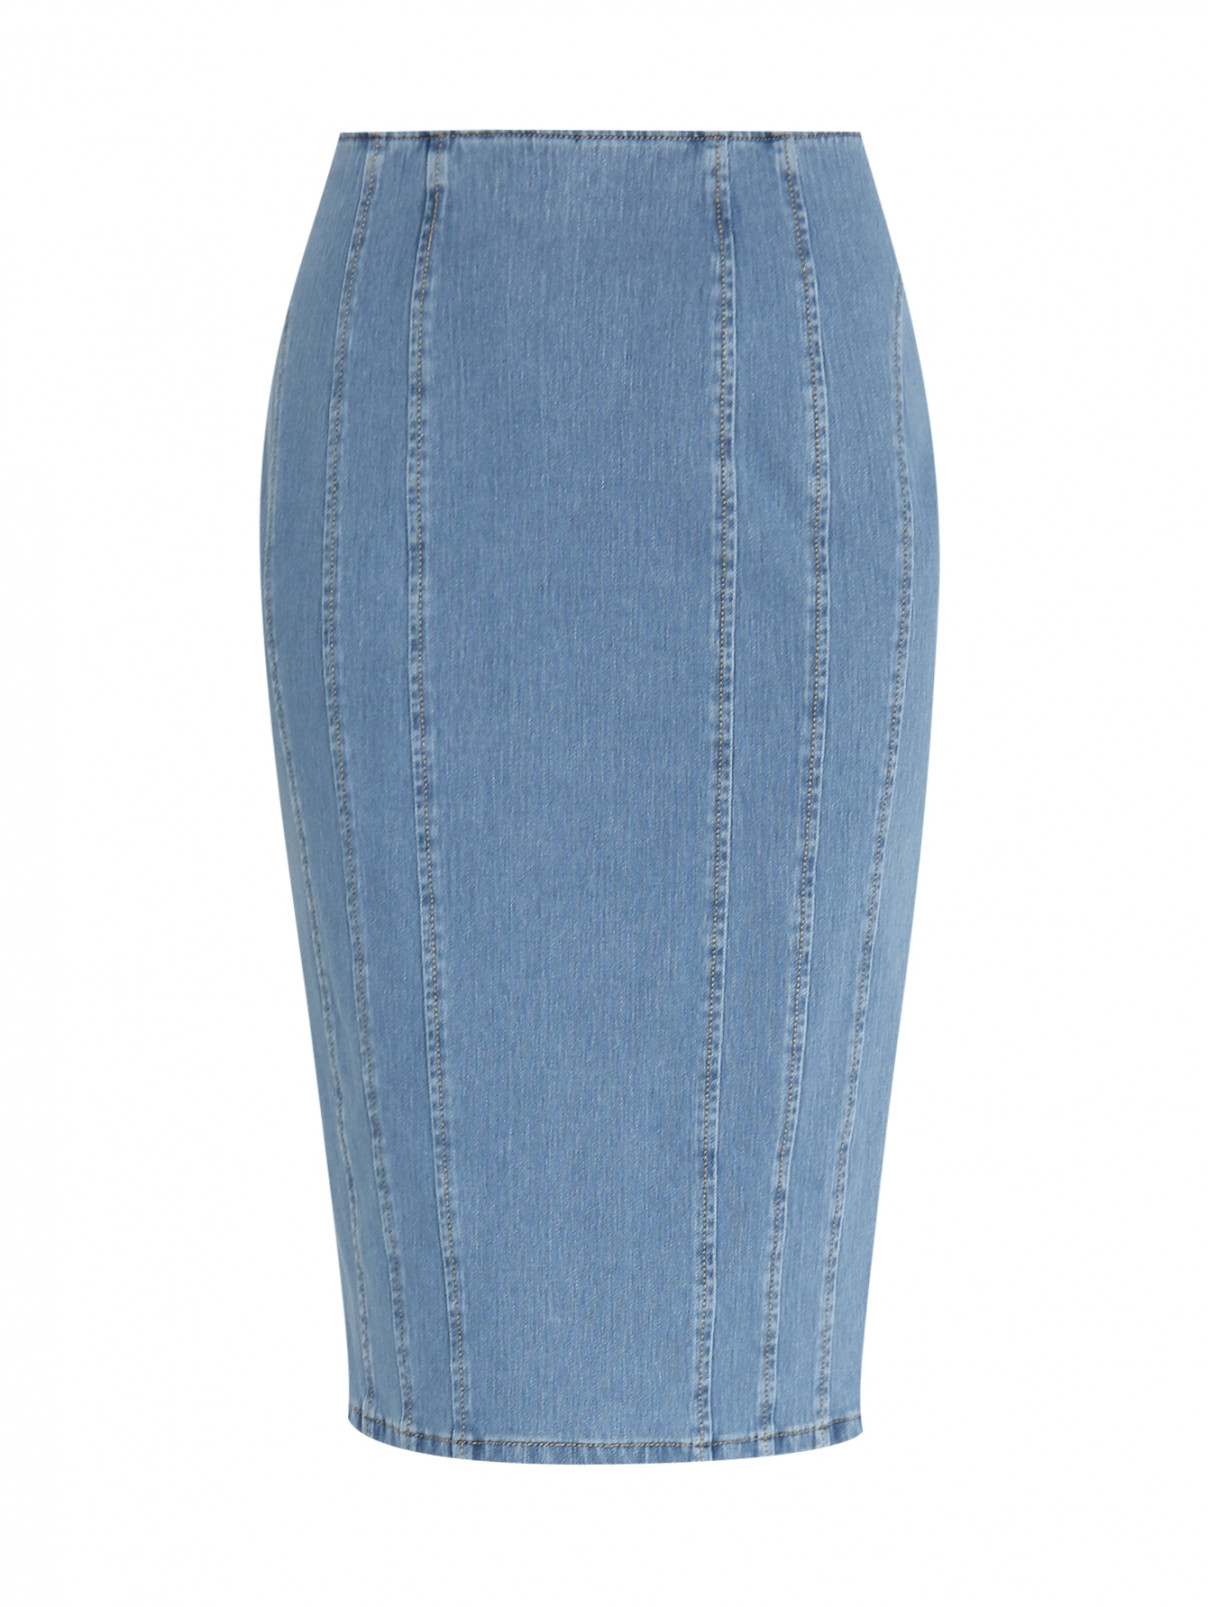 Джинсовая юбка-карандаш с декоративными отстрочками Ashley Graham x Marina Rinaldi  –  Общий вид  – Цвет:  Синий